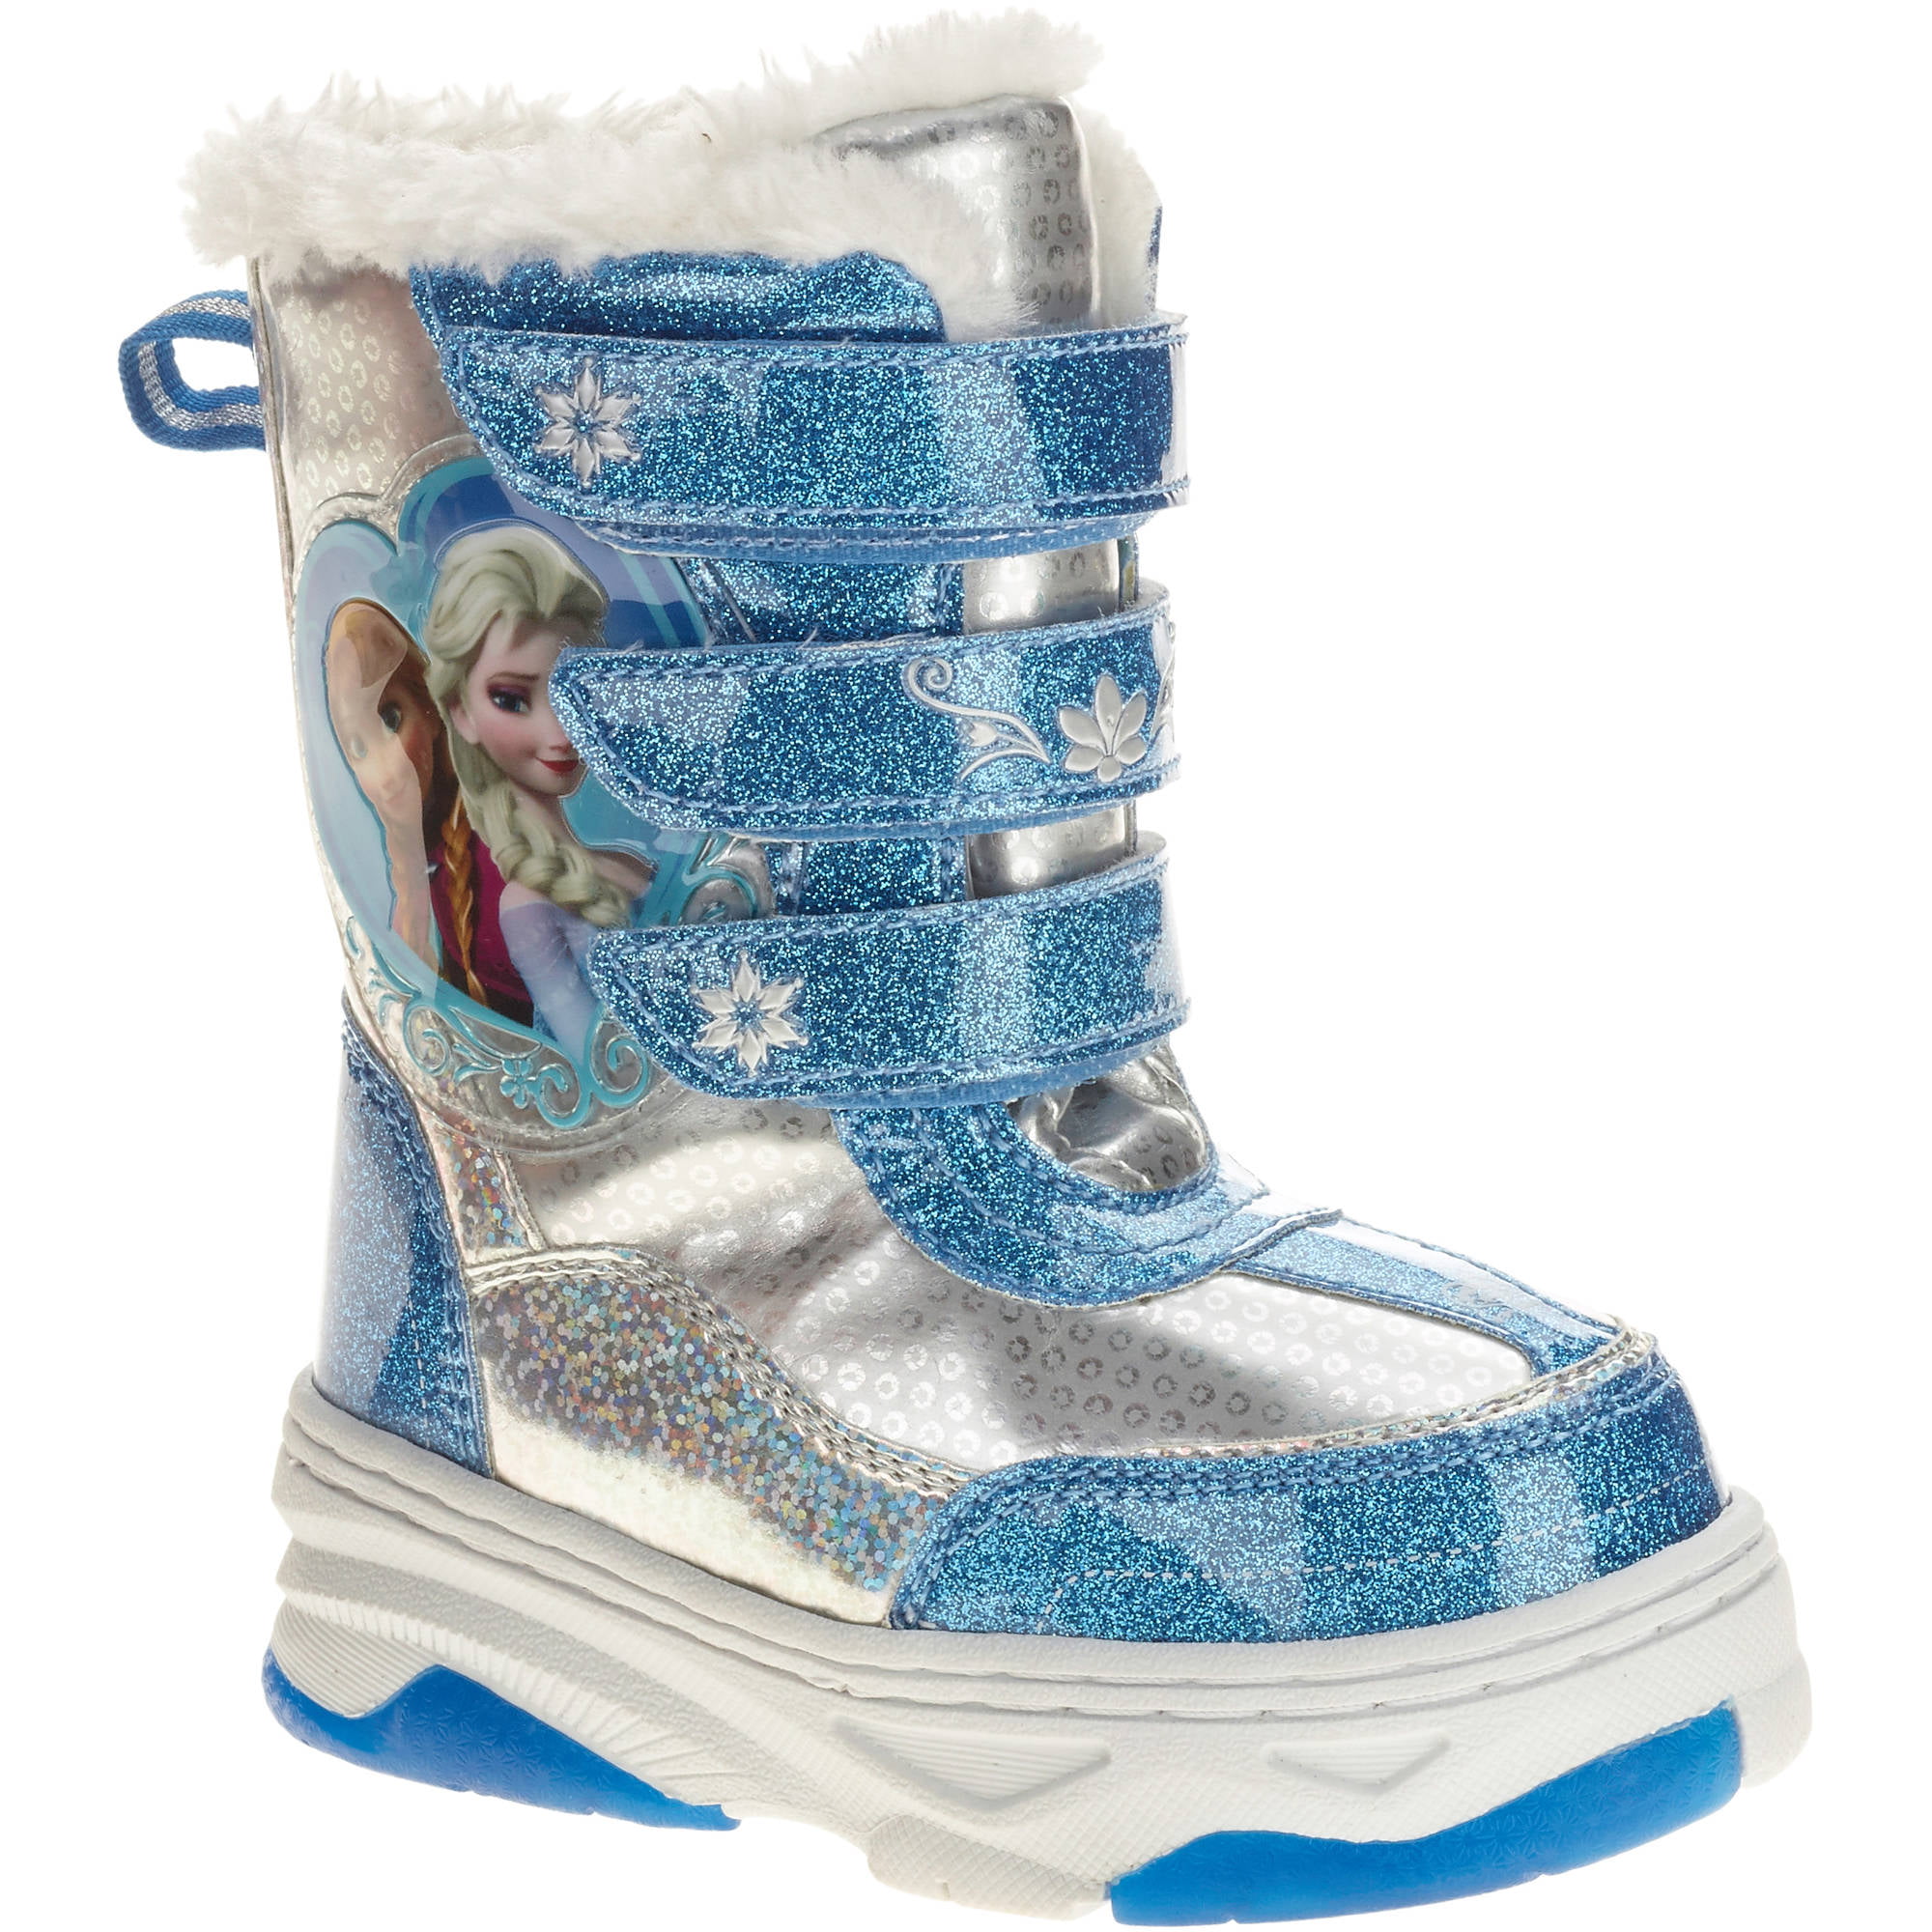 Toddler Boys' Winter Boots - Walmart.com